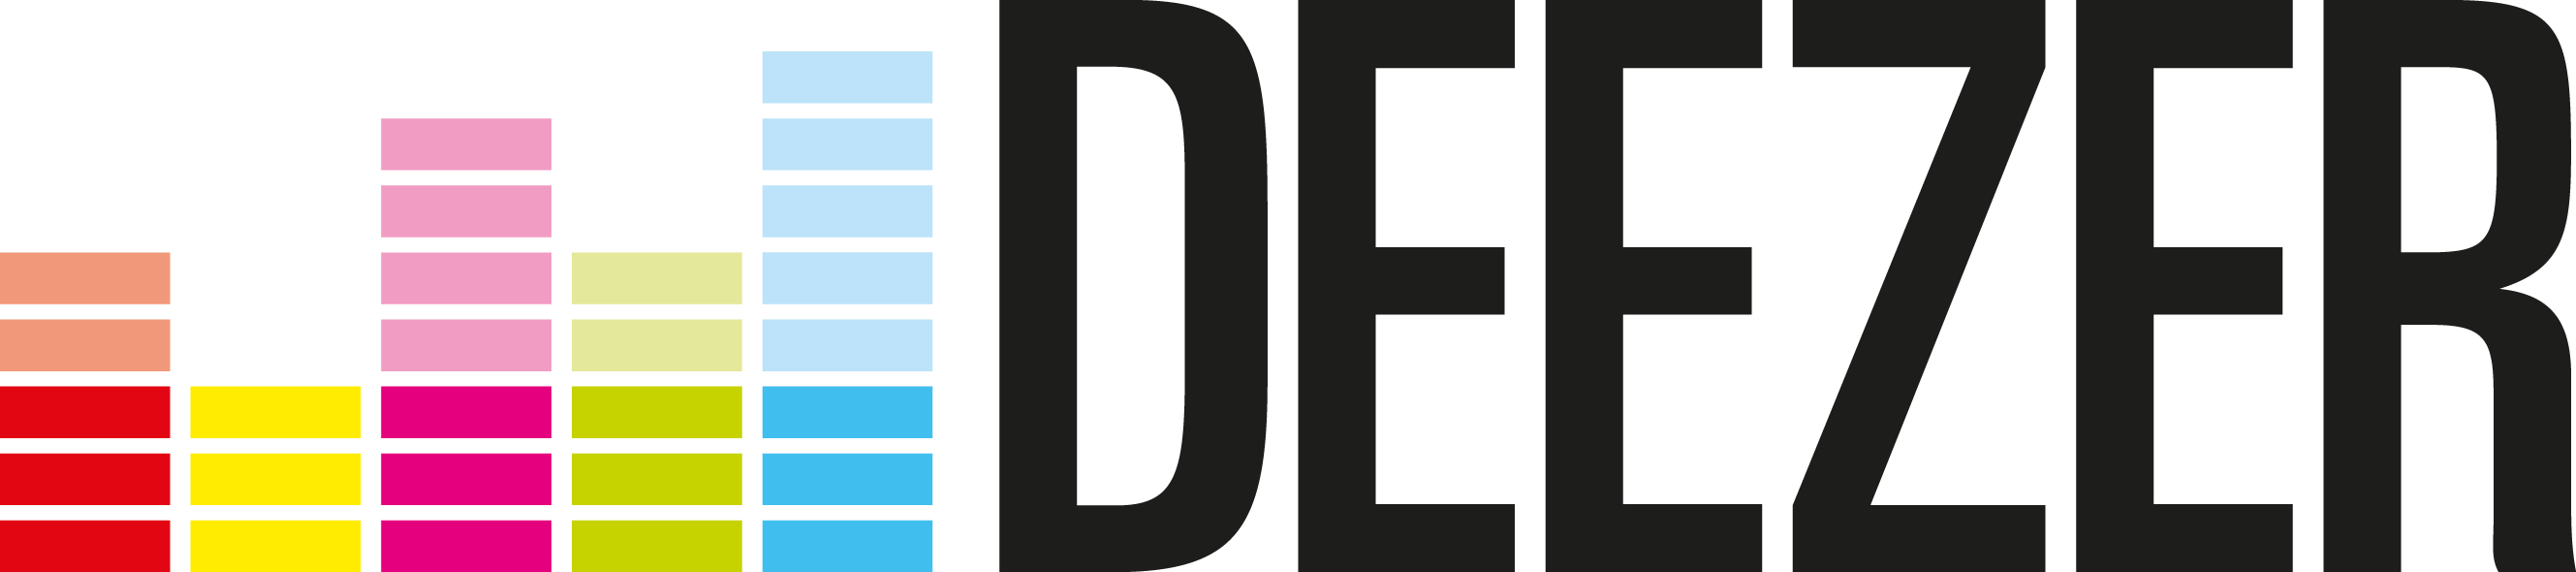 Deezer Logo Vector PNG - 111912